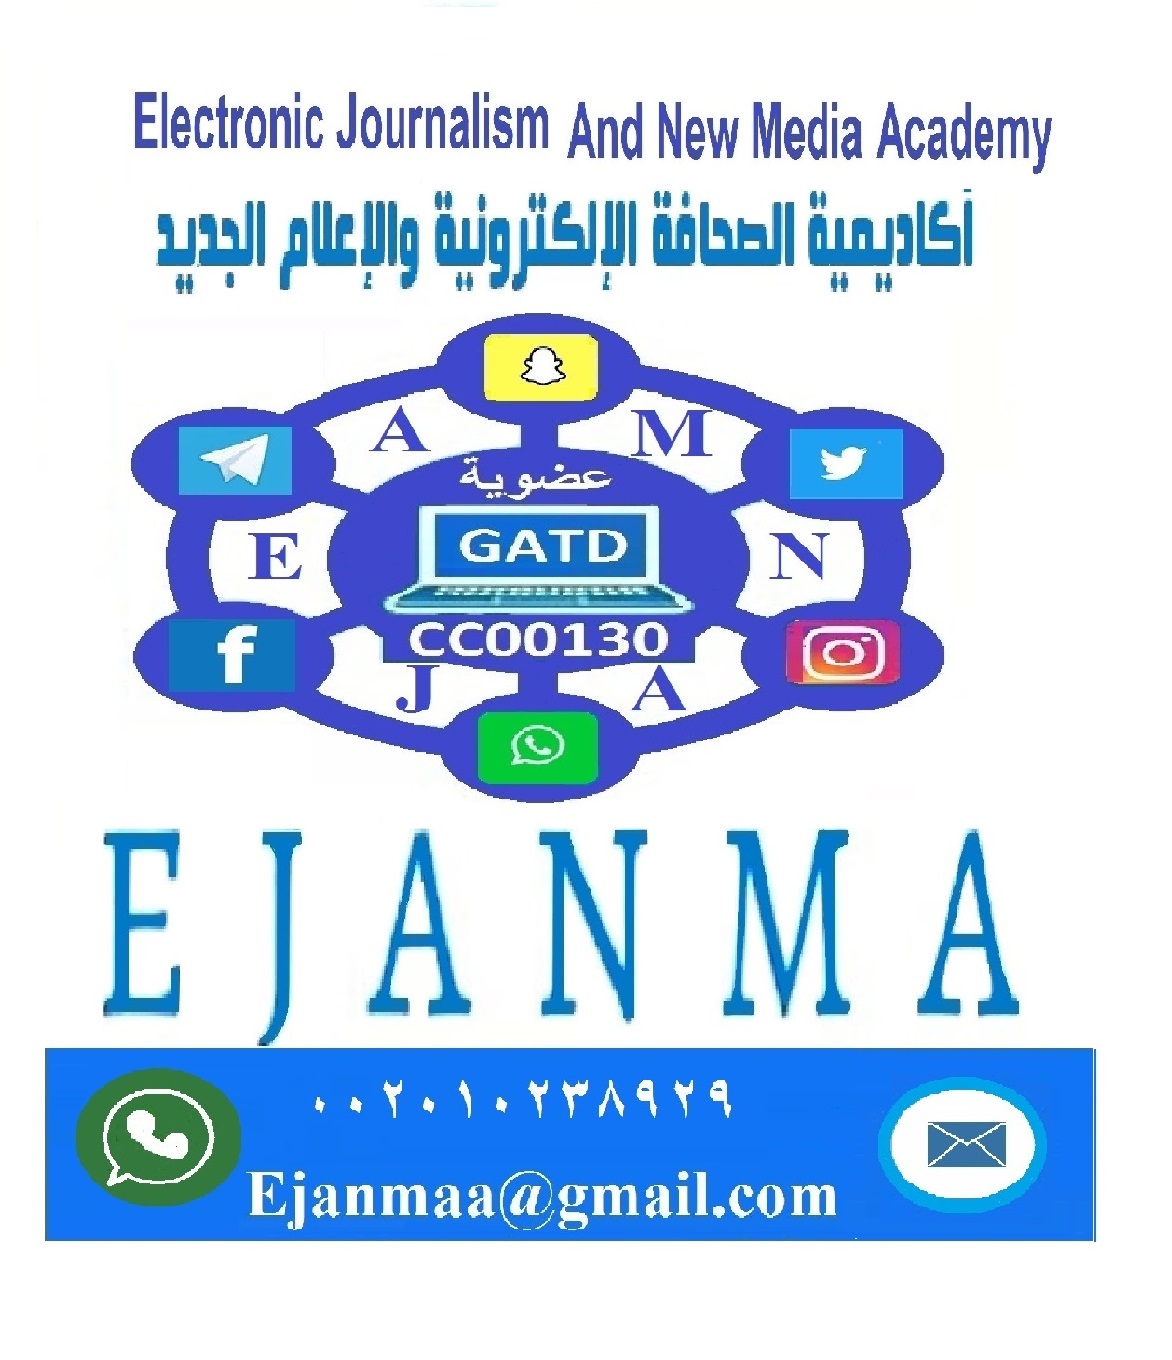 اكاديمية الصحافة الالكترونية والإعلام الجديد  (ايجانما التعليمية الدولية)